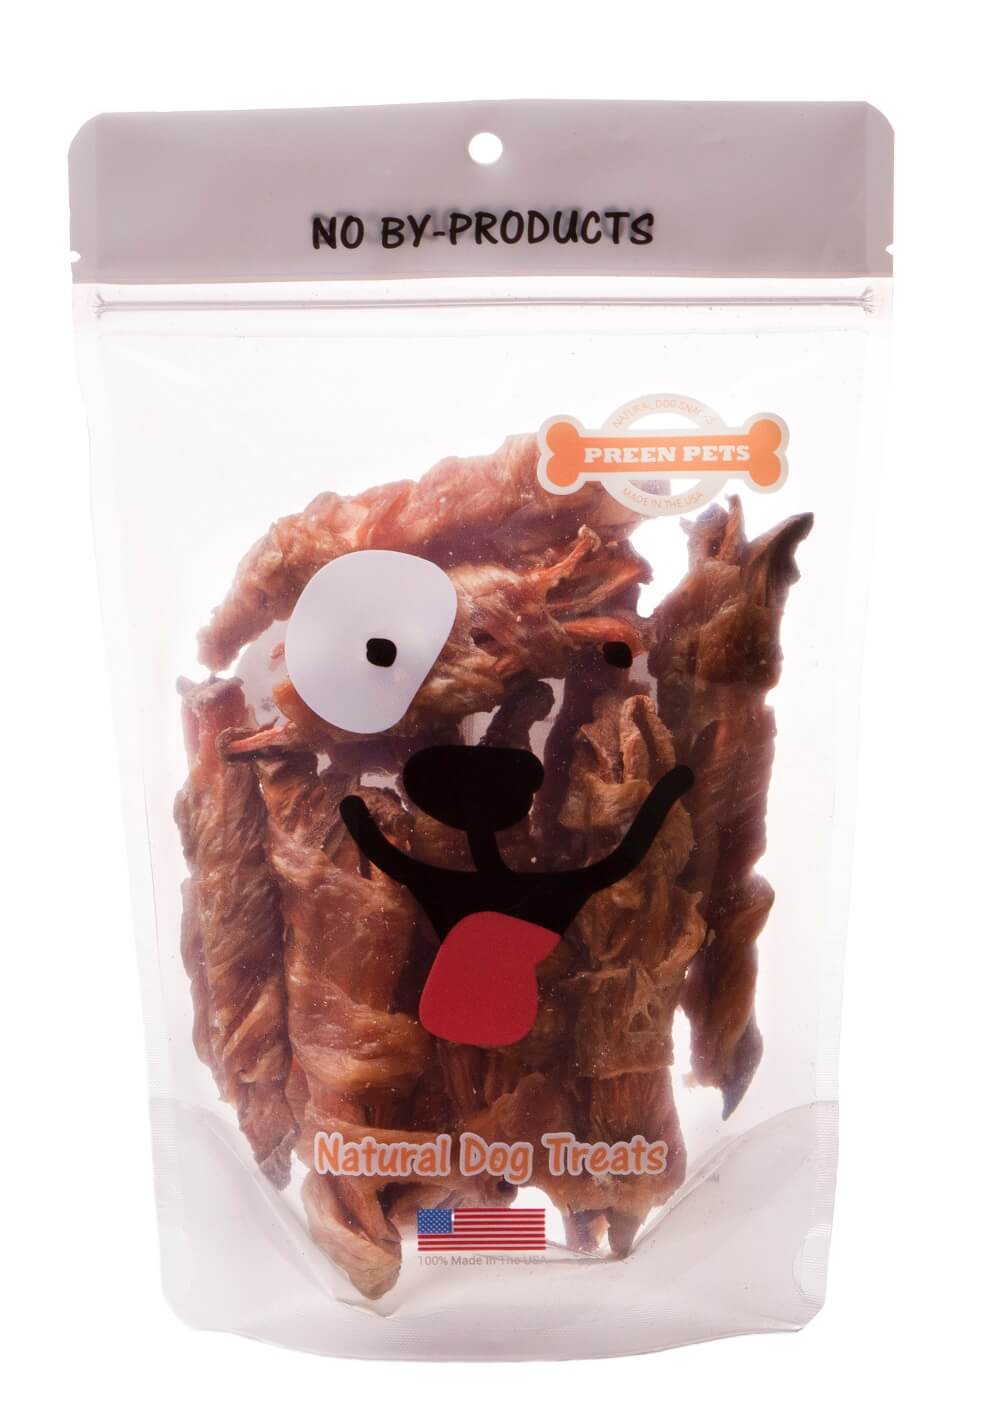 Preen Pets Chicken Sweet Potato Twist Packaged Treats